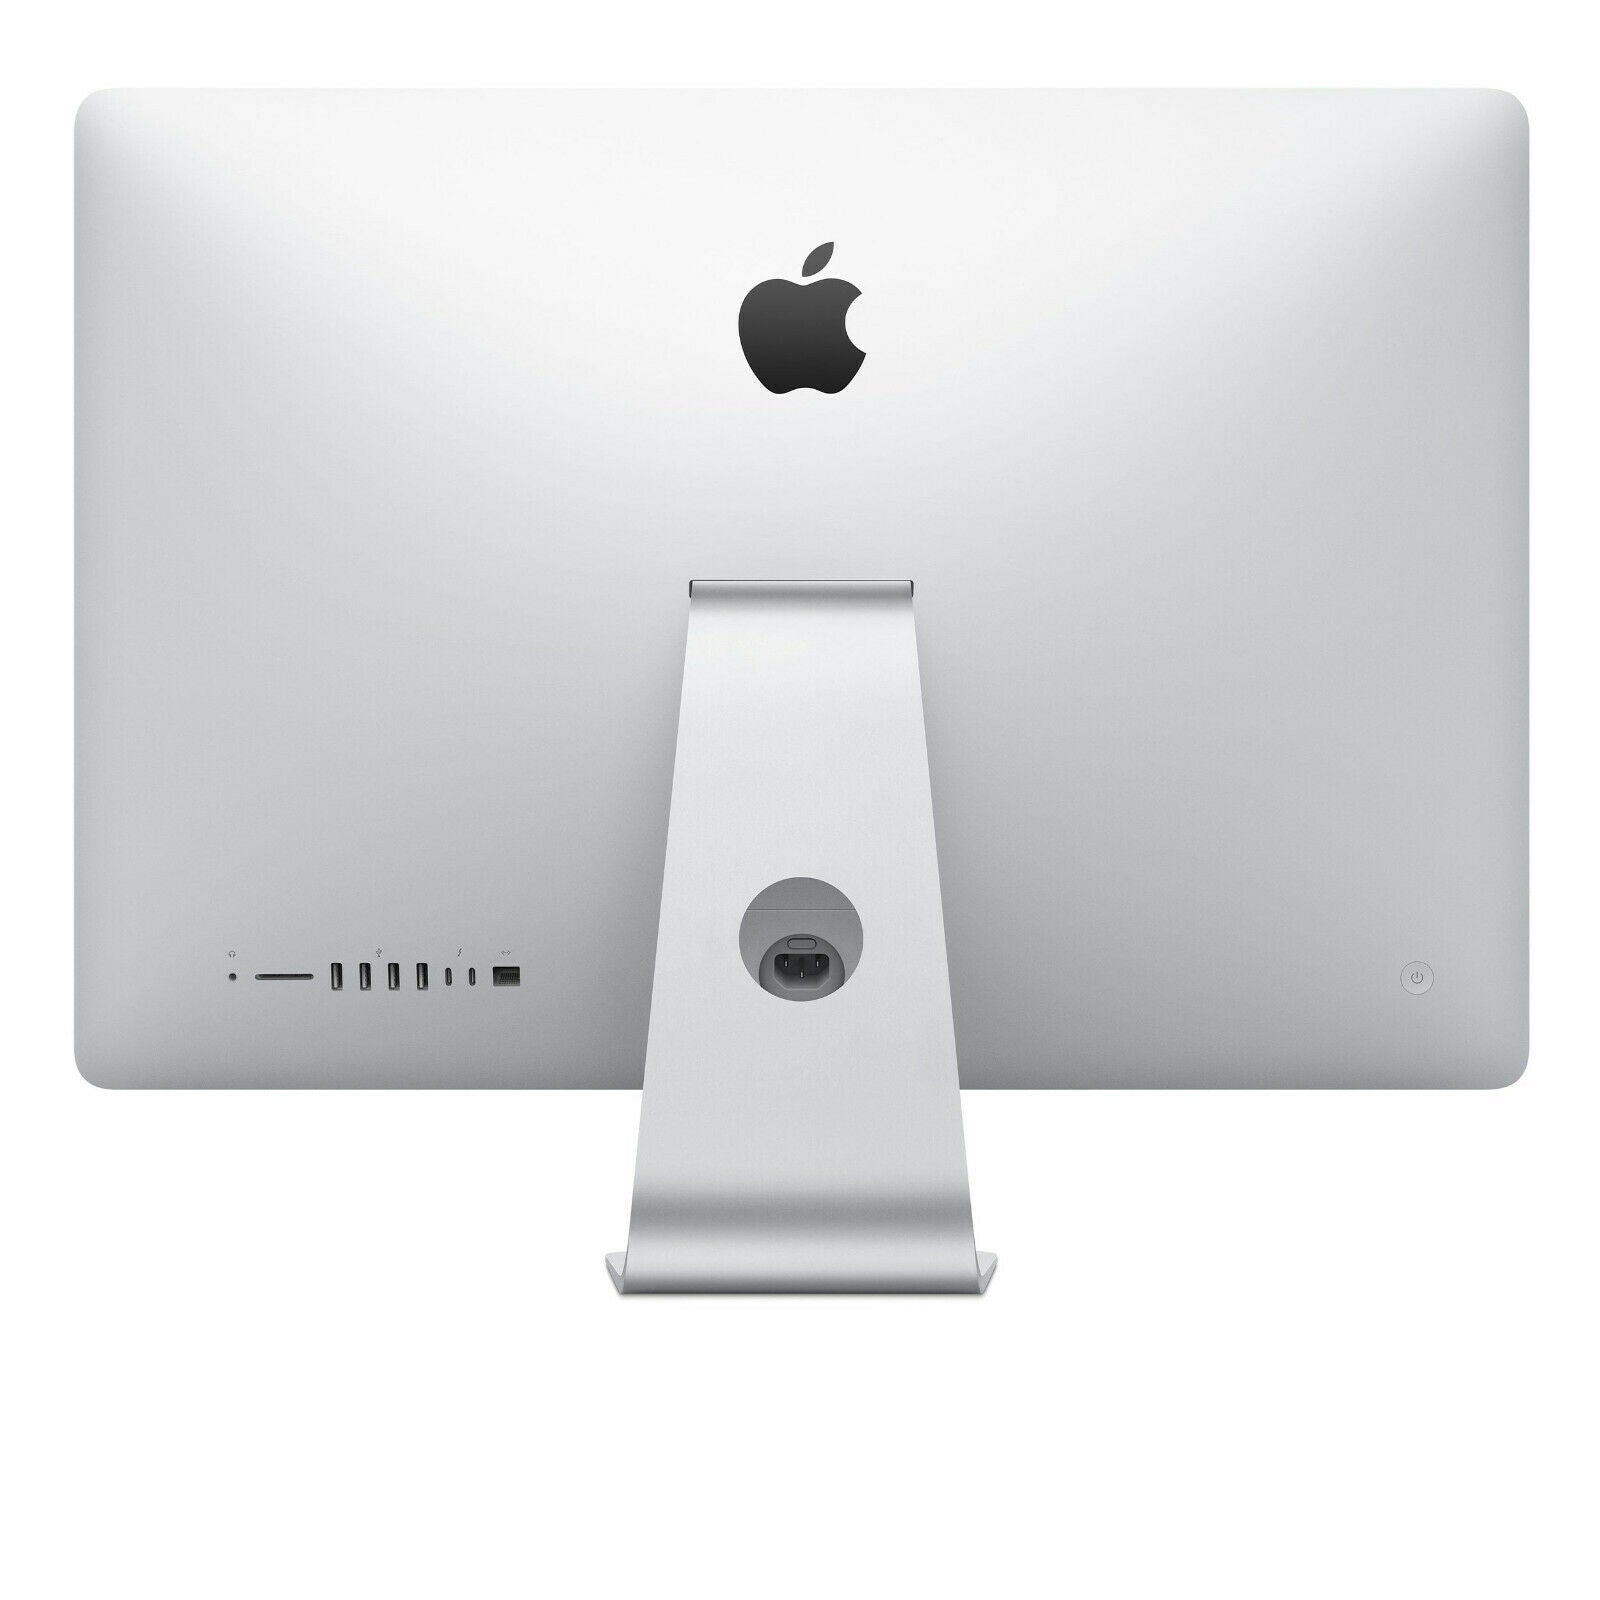 Apple iMac 21.5'' MMQA2LL/A (2017), Intel Core i5 8GB RAM 256GB SSD - Silver - Refurbished Pristine